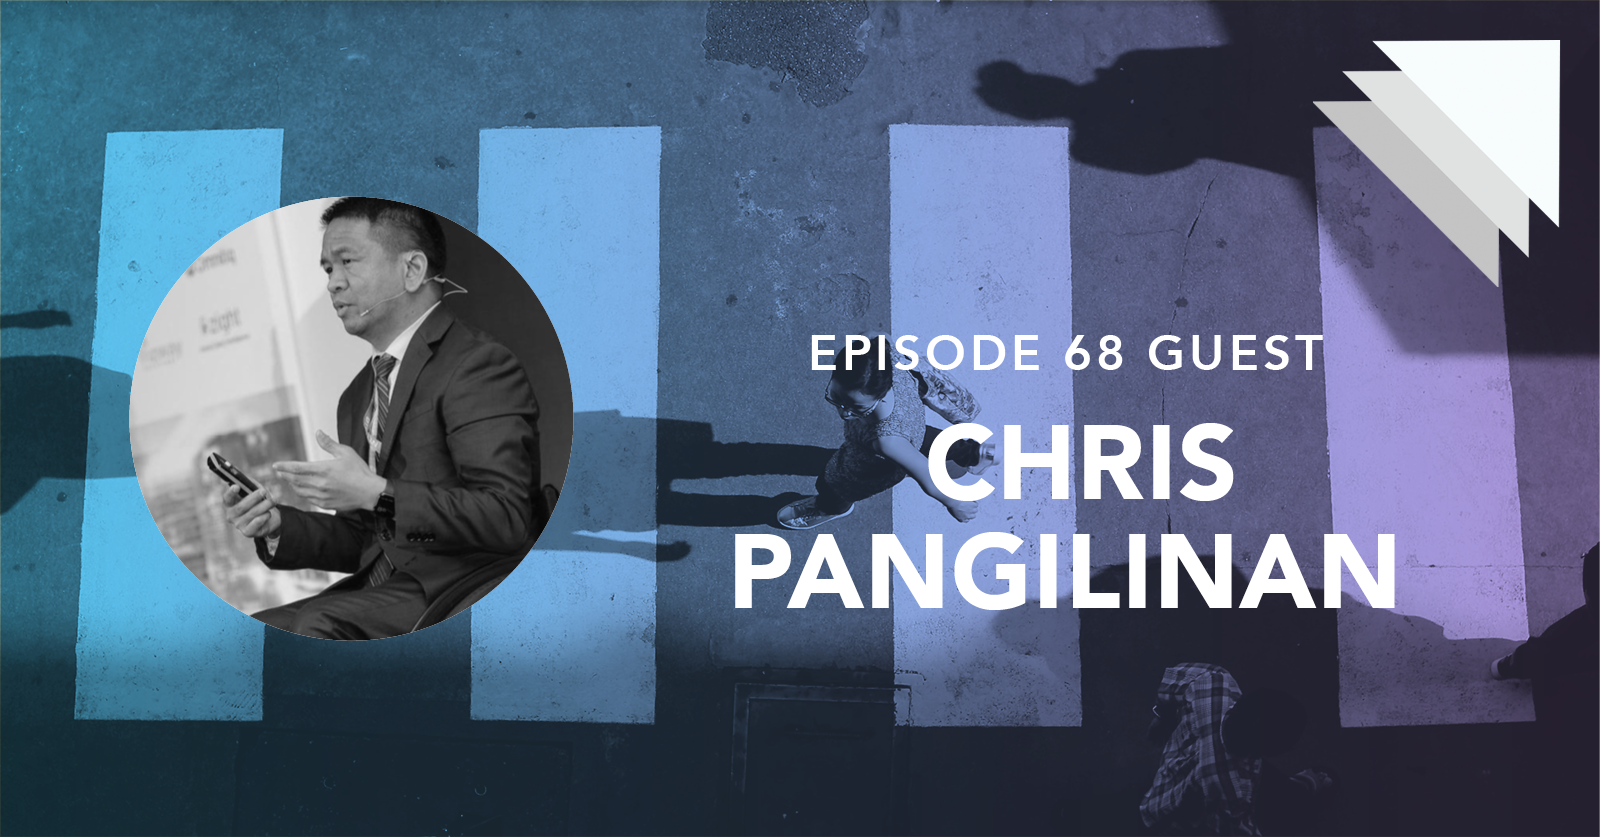 Episode 68 guest Chris Pangilinan